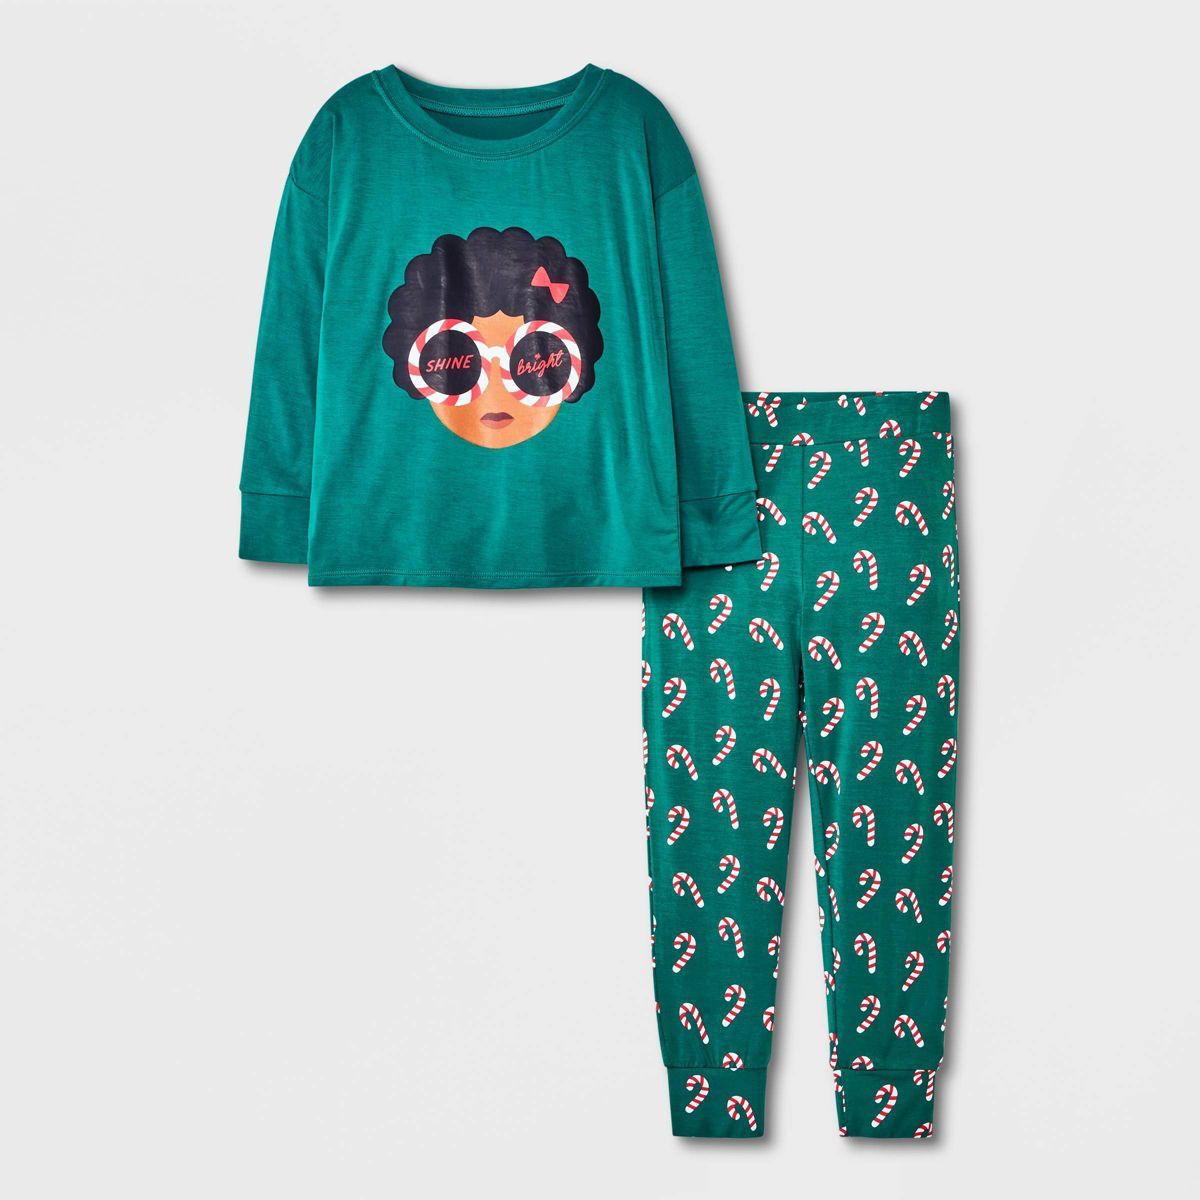 Elle Olivia Toddler Girls' 2pc Candy Cane Pajama Set - Green | Target